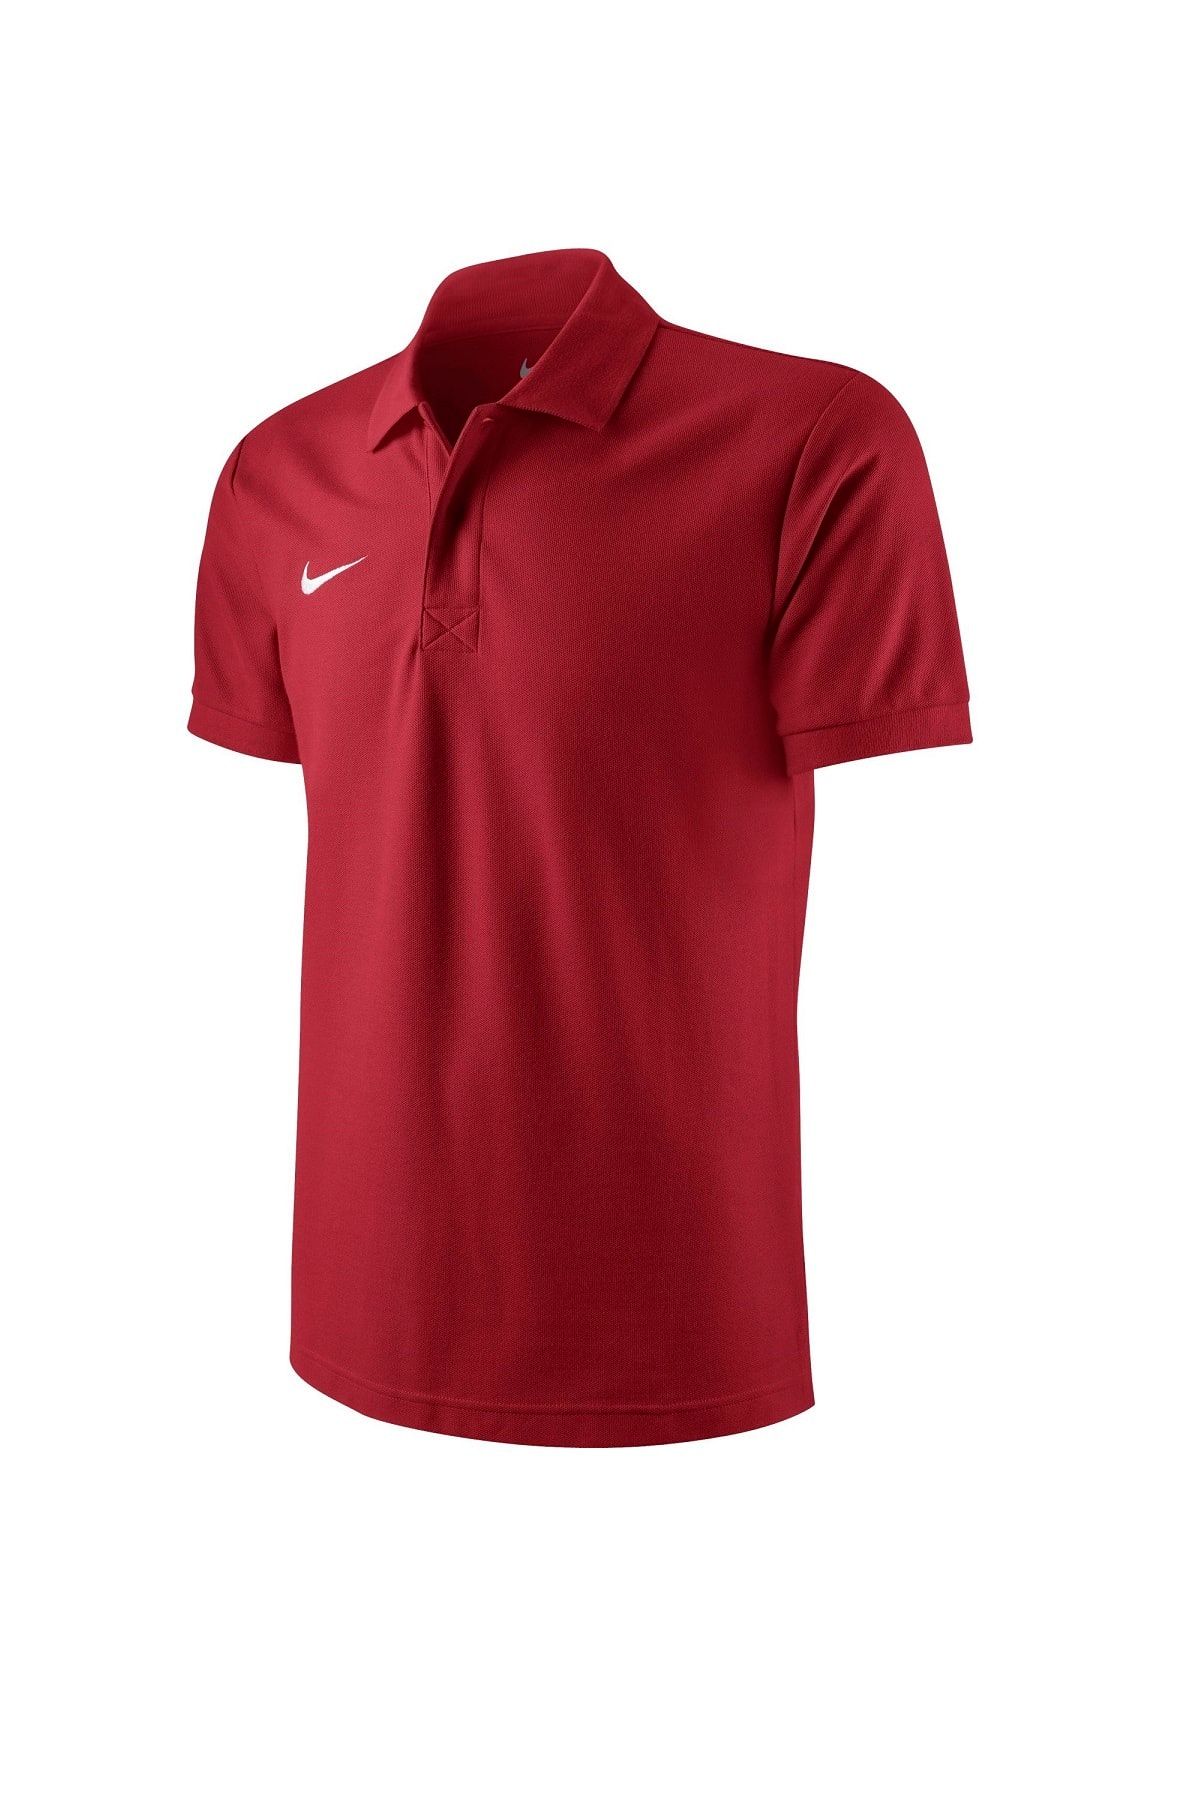 Nike Çocuk Polo T-Shirt - 456000-657